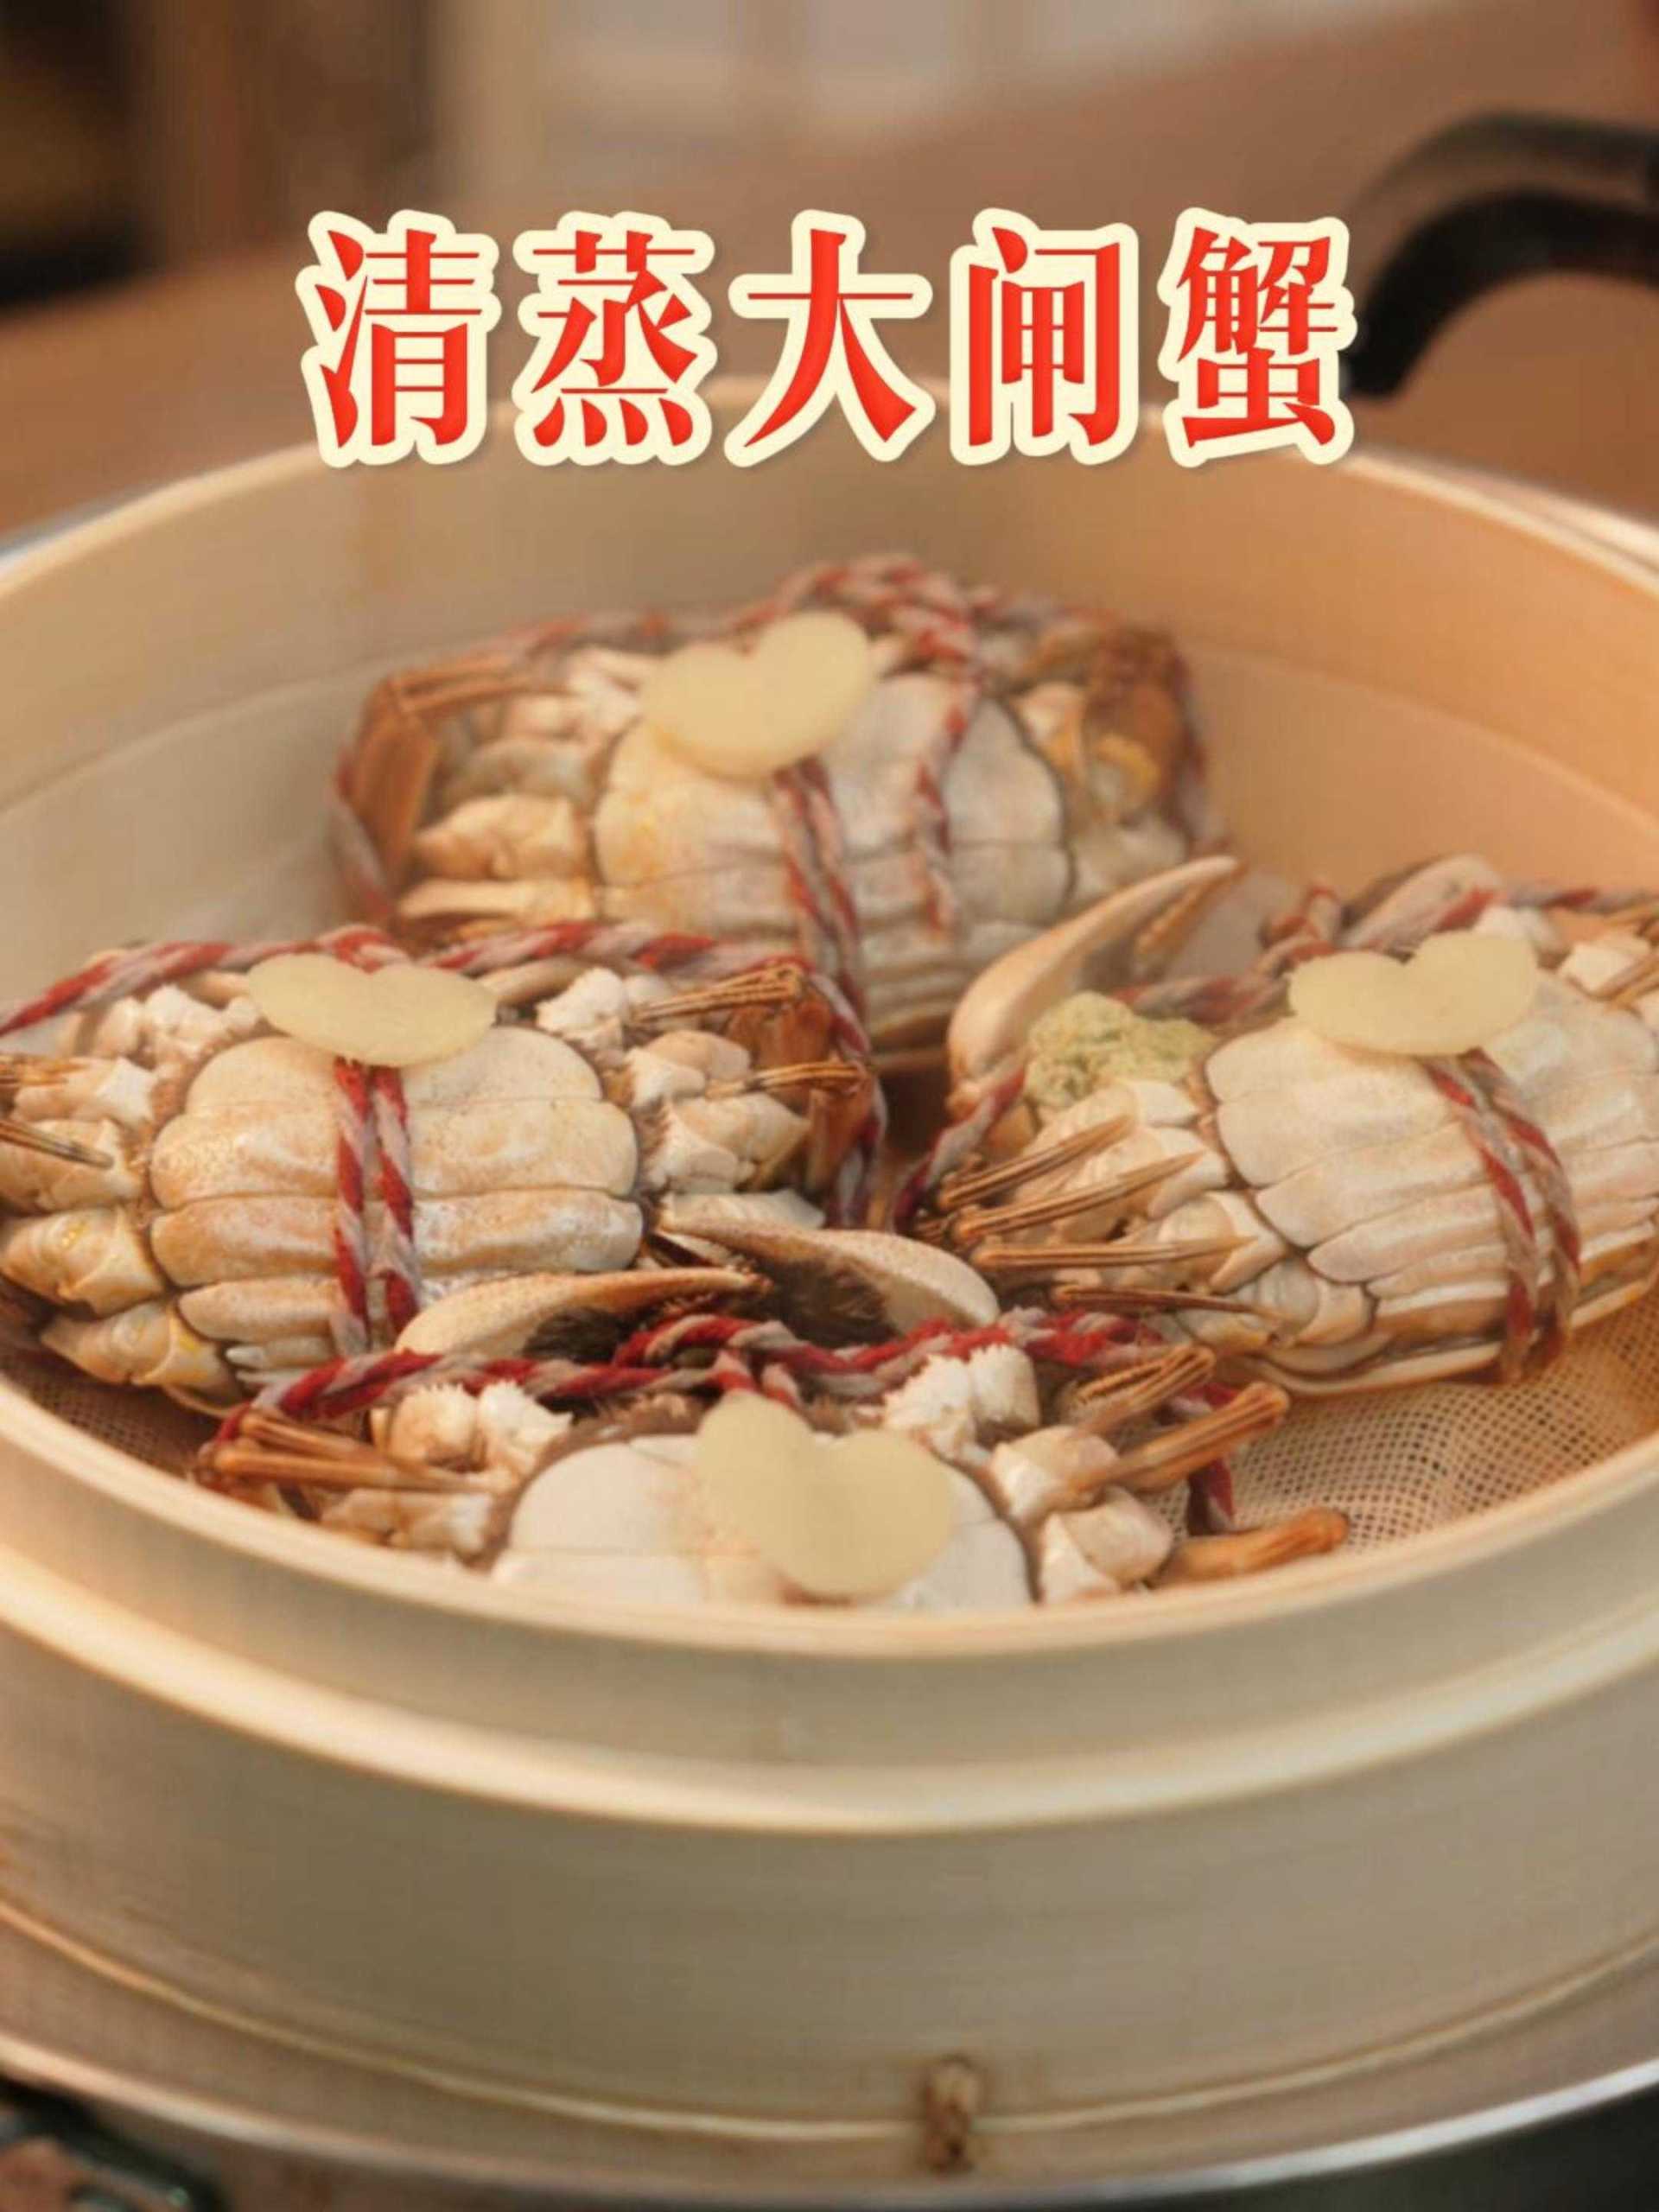 清蒸大闸蟹烹饪教程